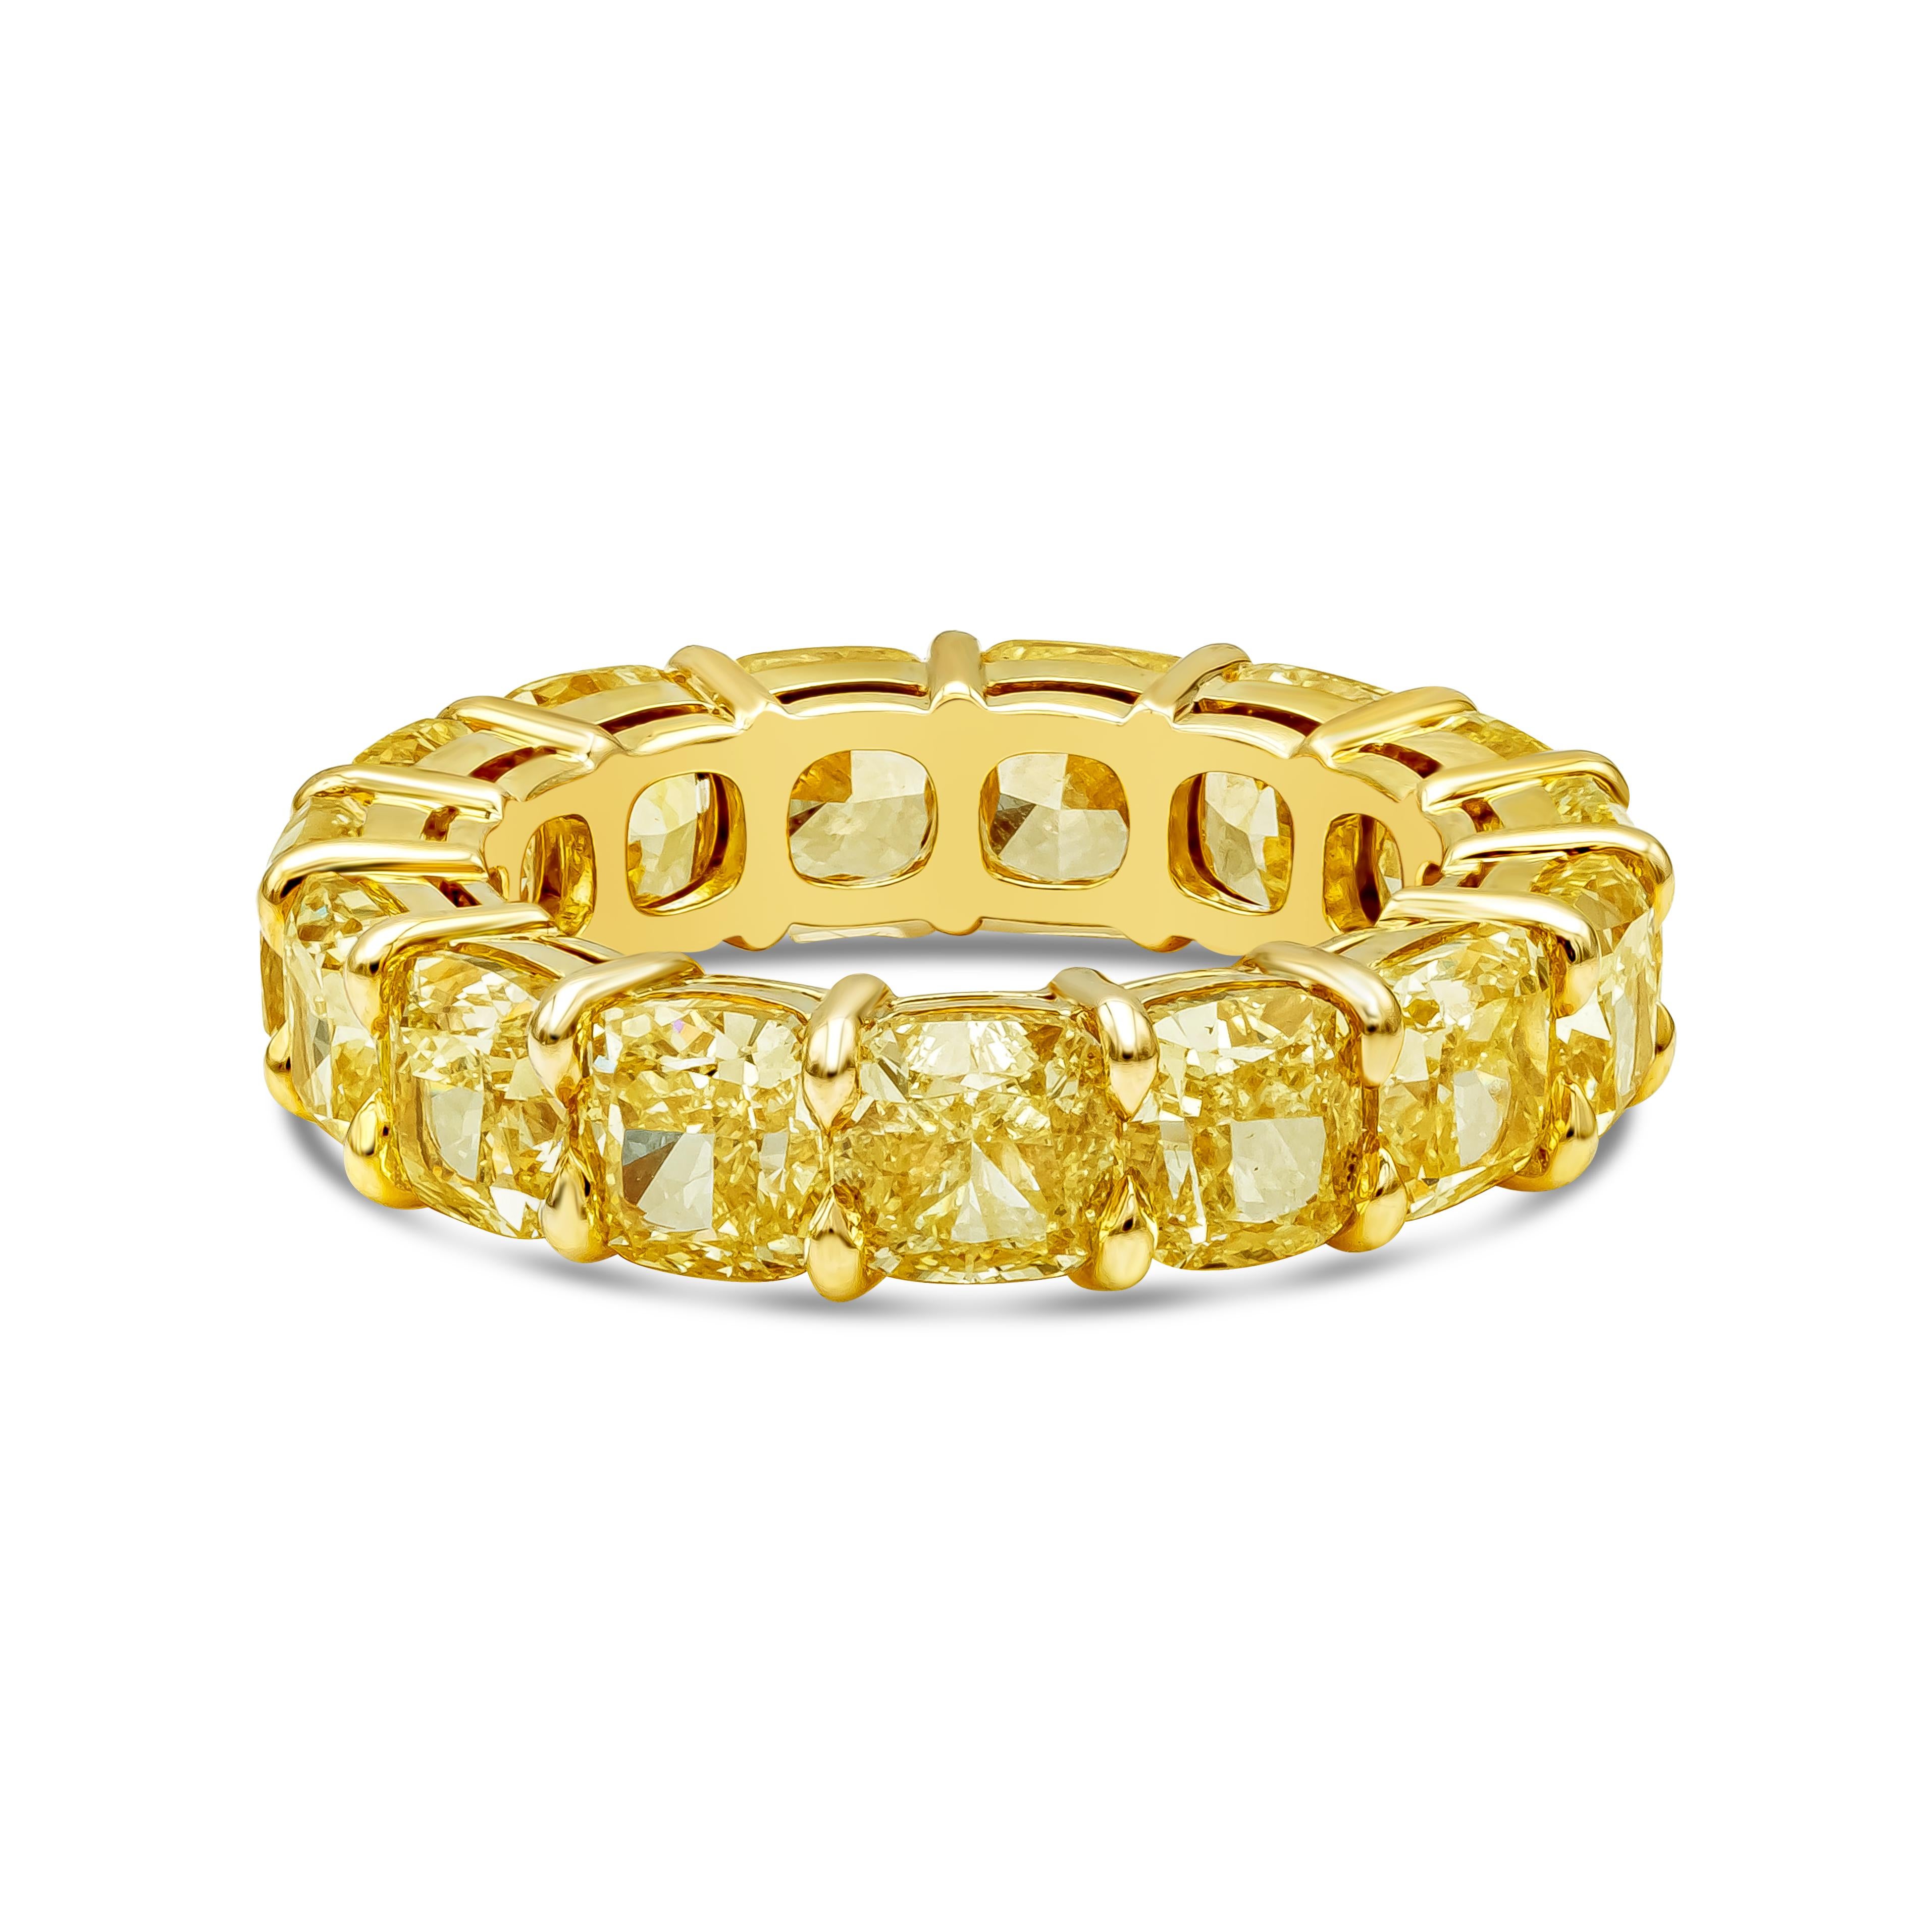 Ein wunderschöner Ehering für die Ewigkeit, besetzt mit 15 atemberaubenden GIA-zertifizierten Diamanten im gelben Kissenschliff, VS in Reinheit. Die Diamanten wiegen insgesamt 10,83 Karat. Fassung aus 18K Gelbgold. Größe 6.25 US.

Roman Malakov ist